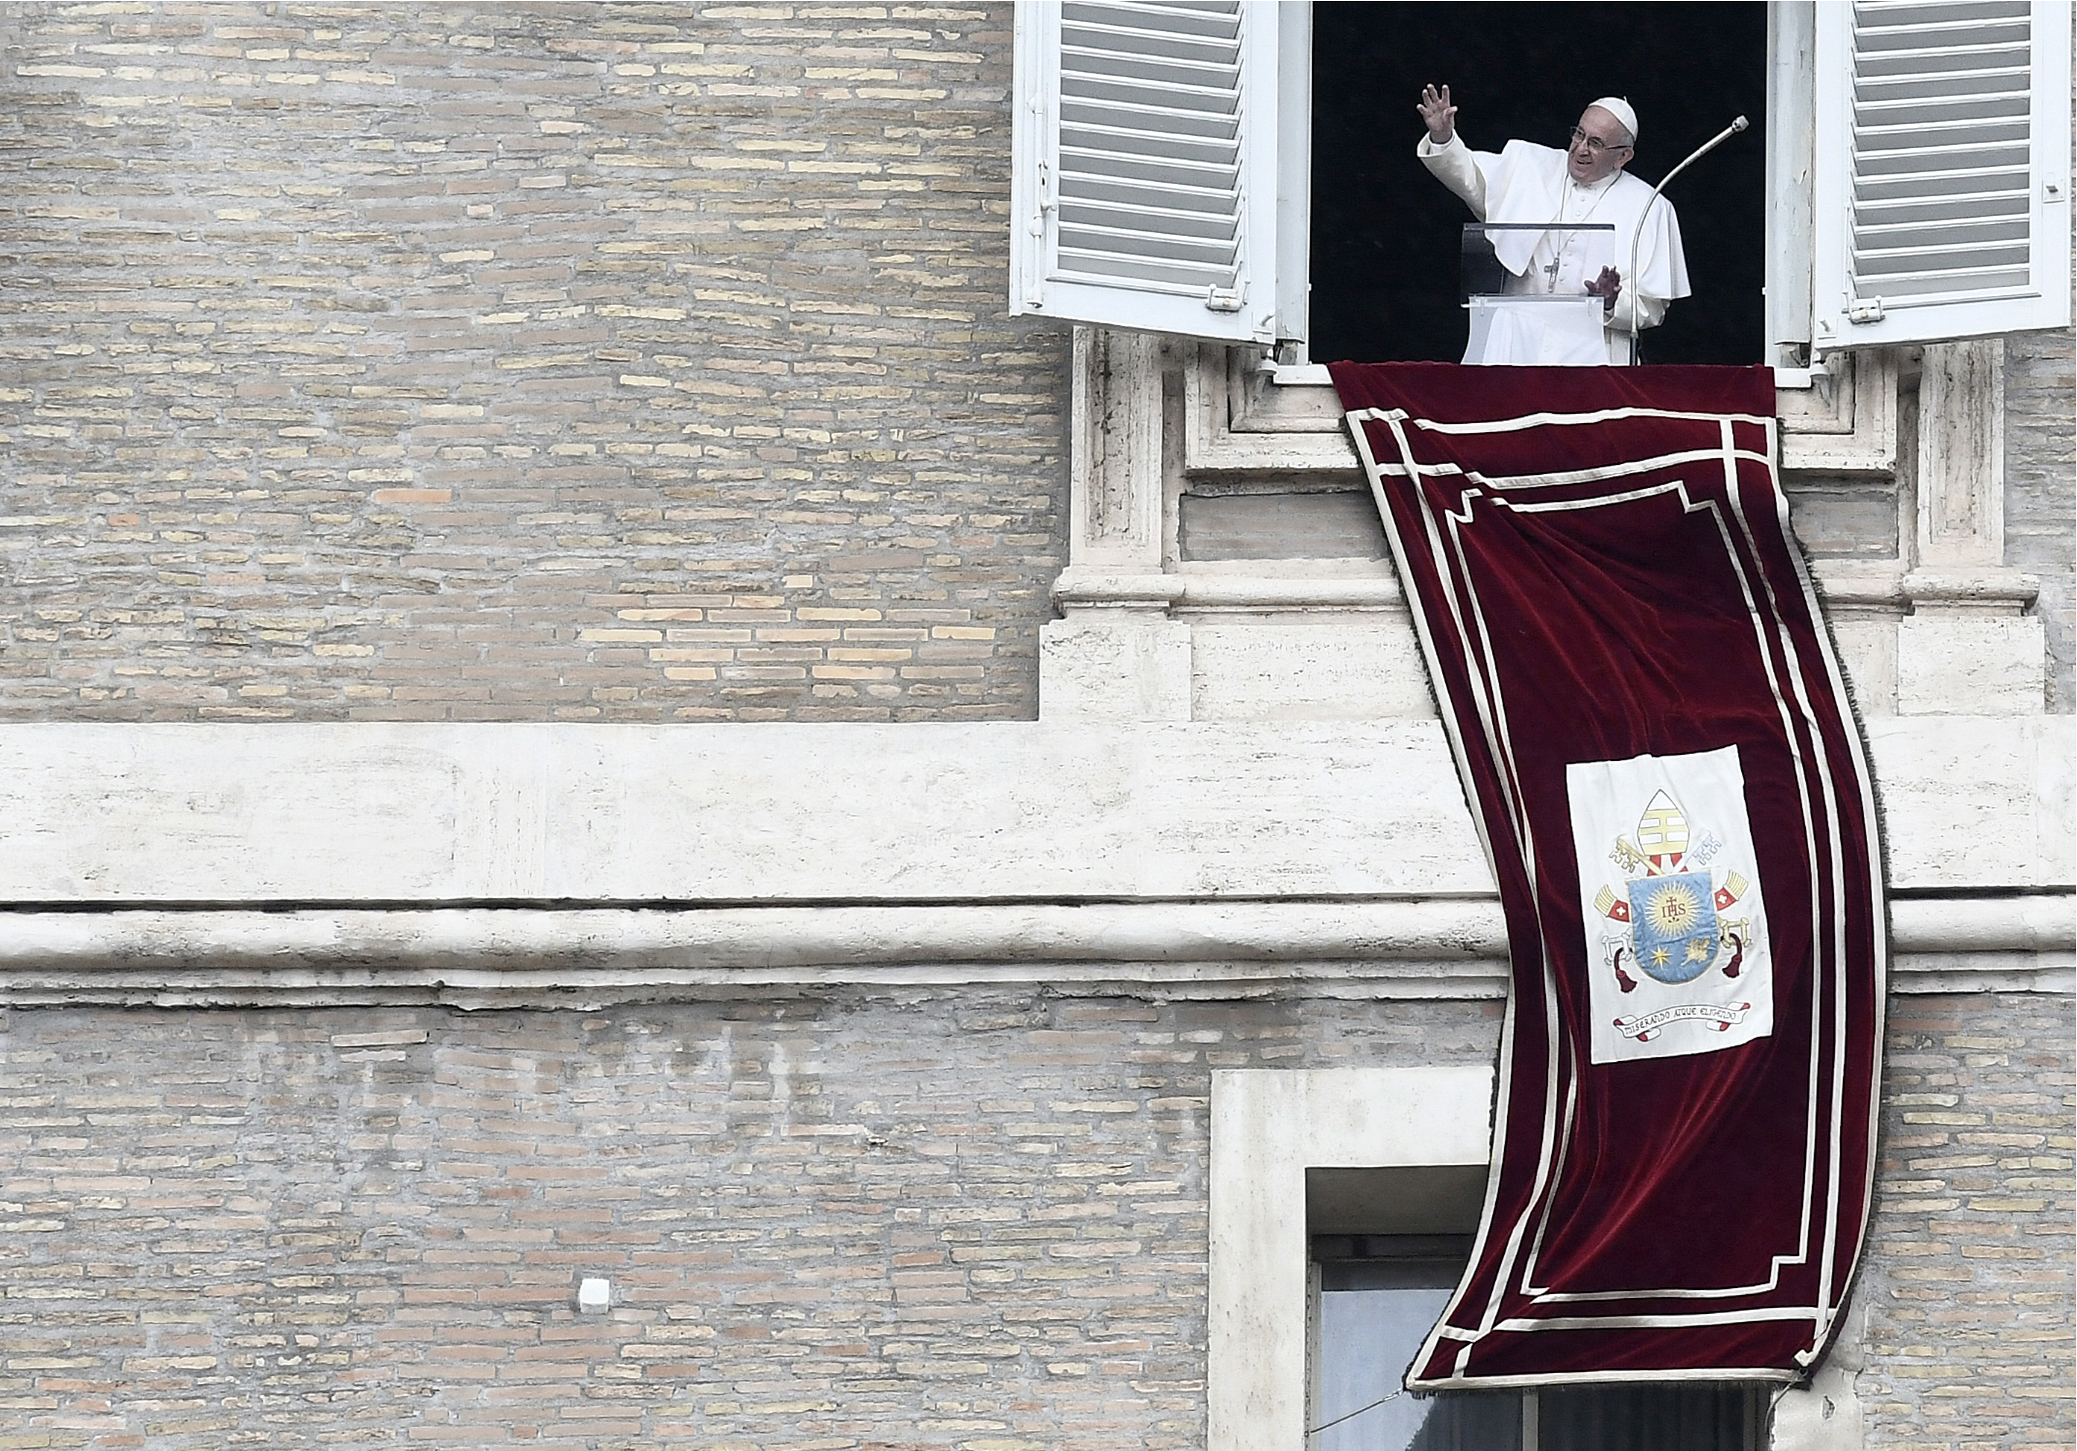 El Papa saluda a venezolanos que acudieron al Vaticano con imagen de la Chiquinquirá